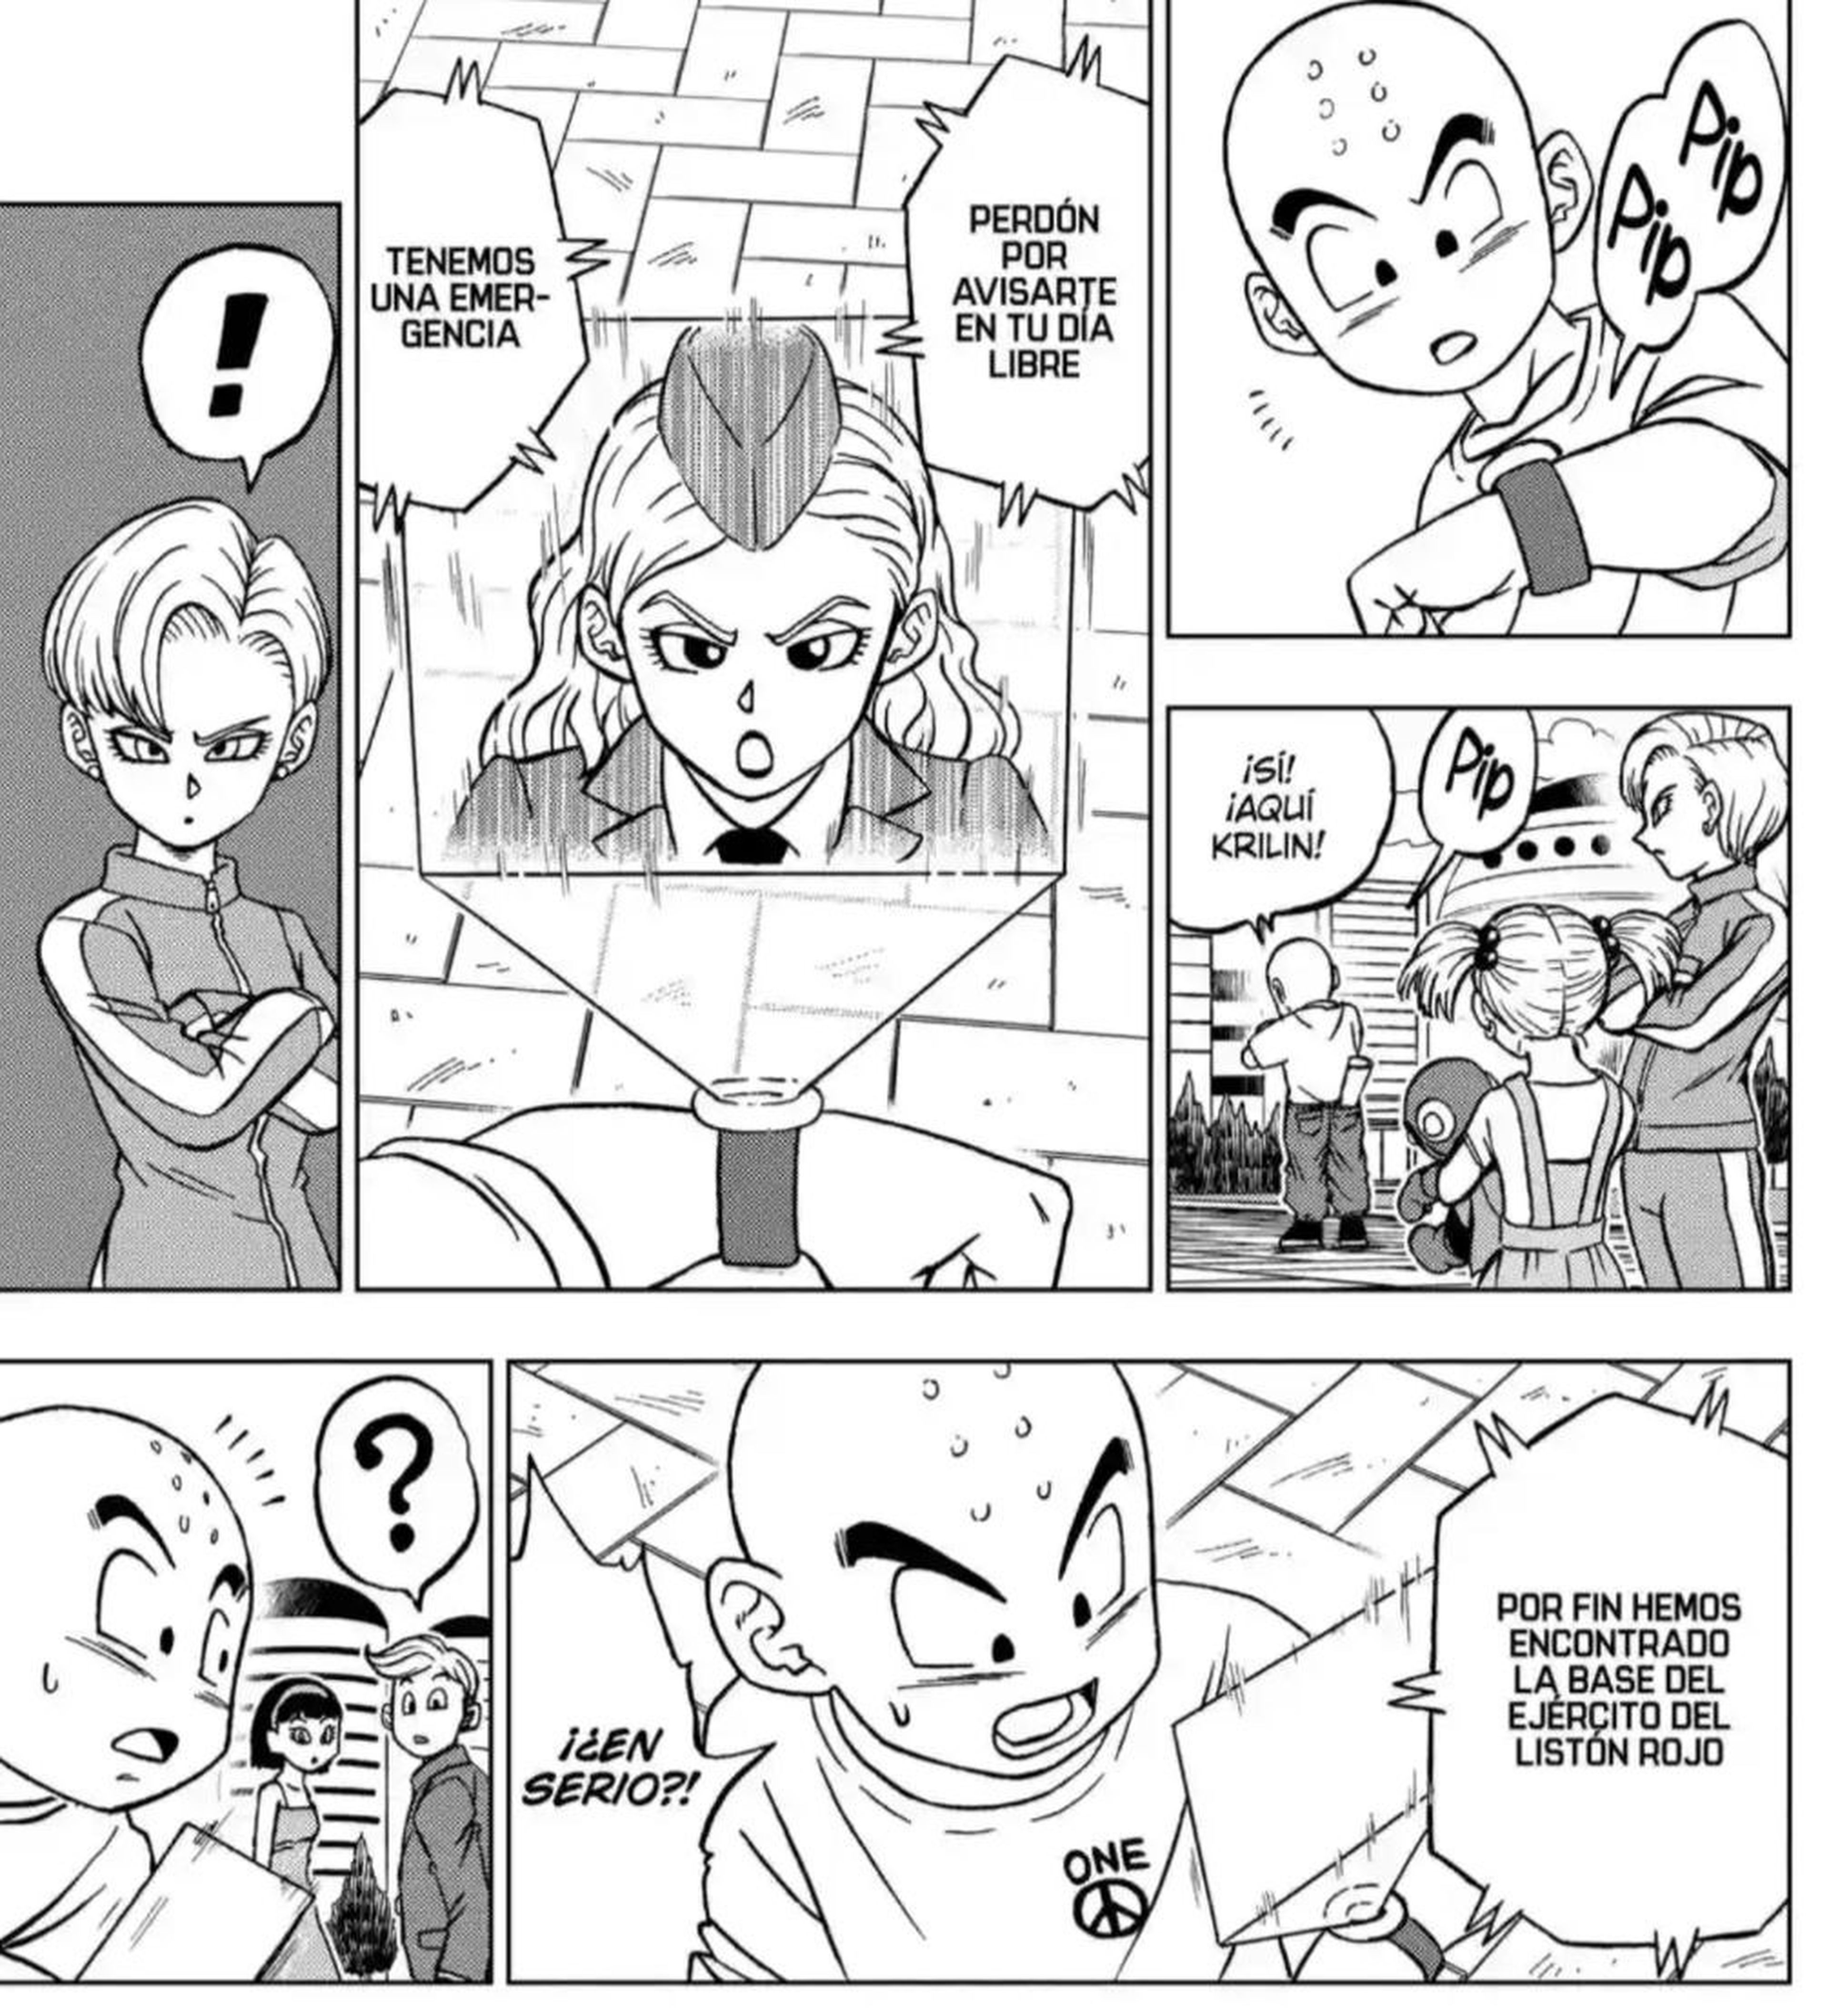 Dragon Ball Super Capítulo 95 – Mangás Chan